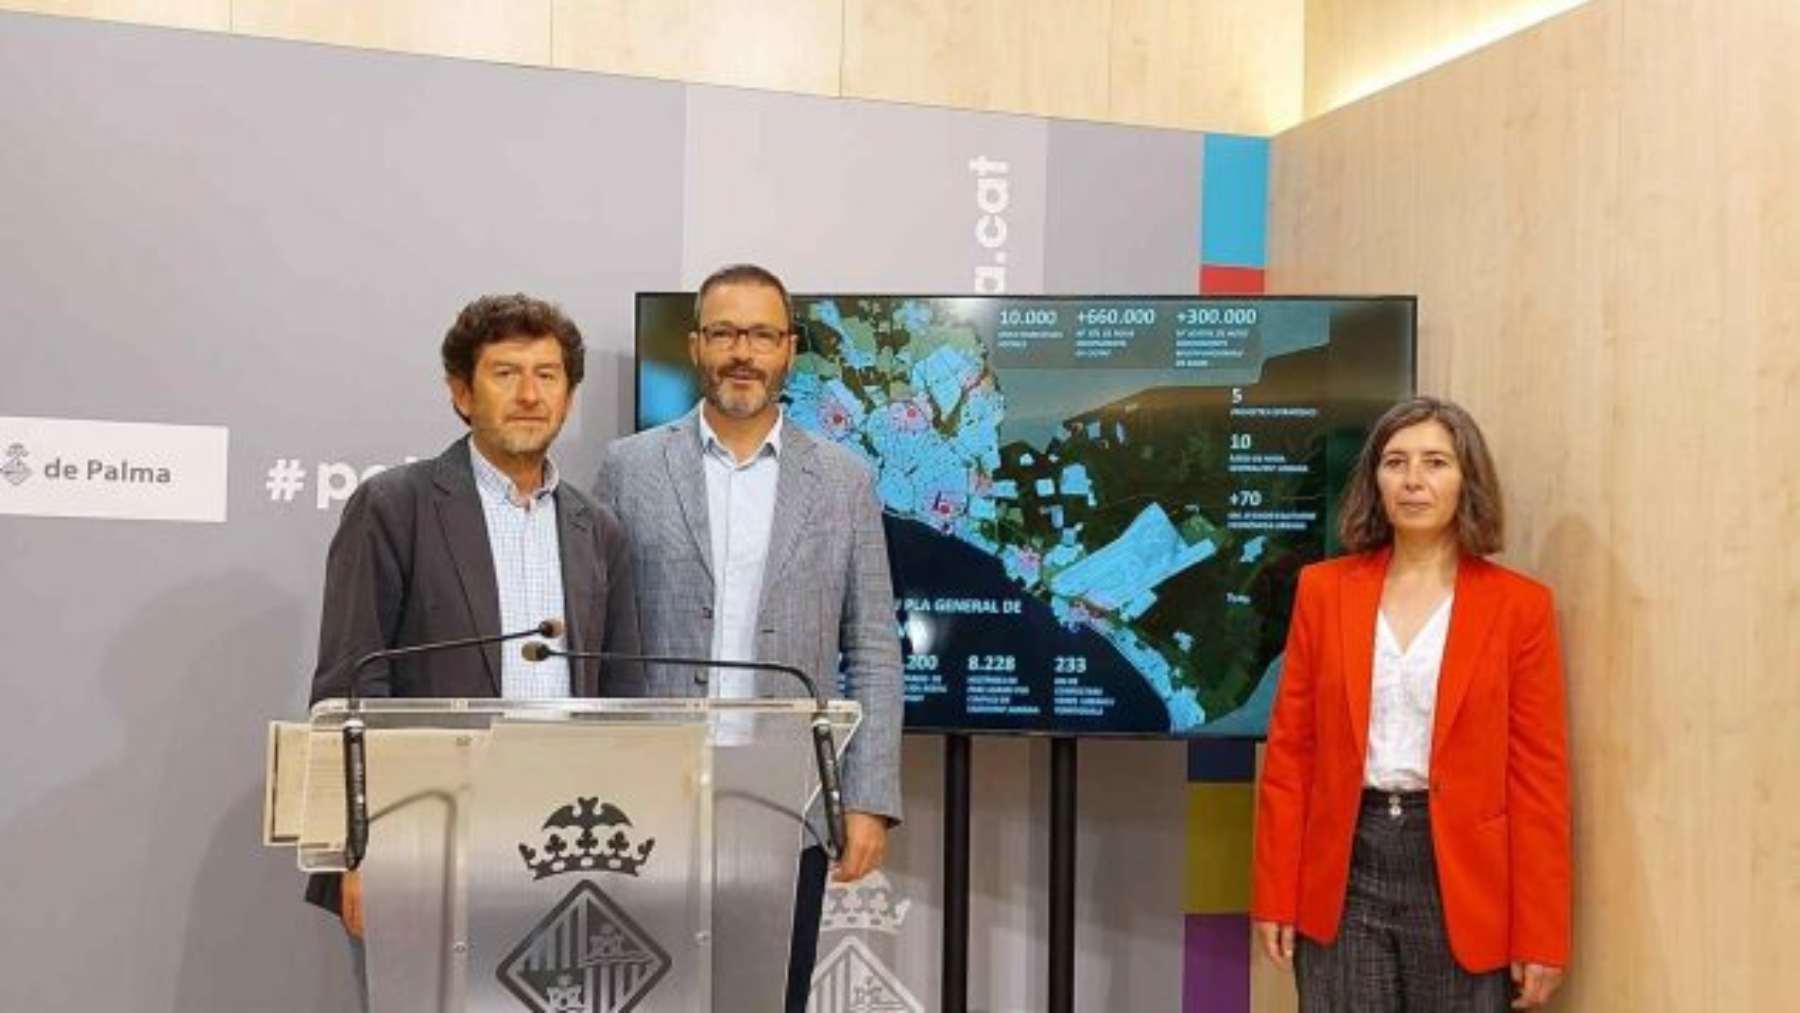 El ex alcalde, José Hila, con el ex edil Alberto Jarabo (Podemos), y la concejala Neus Truyol (Més).